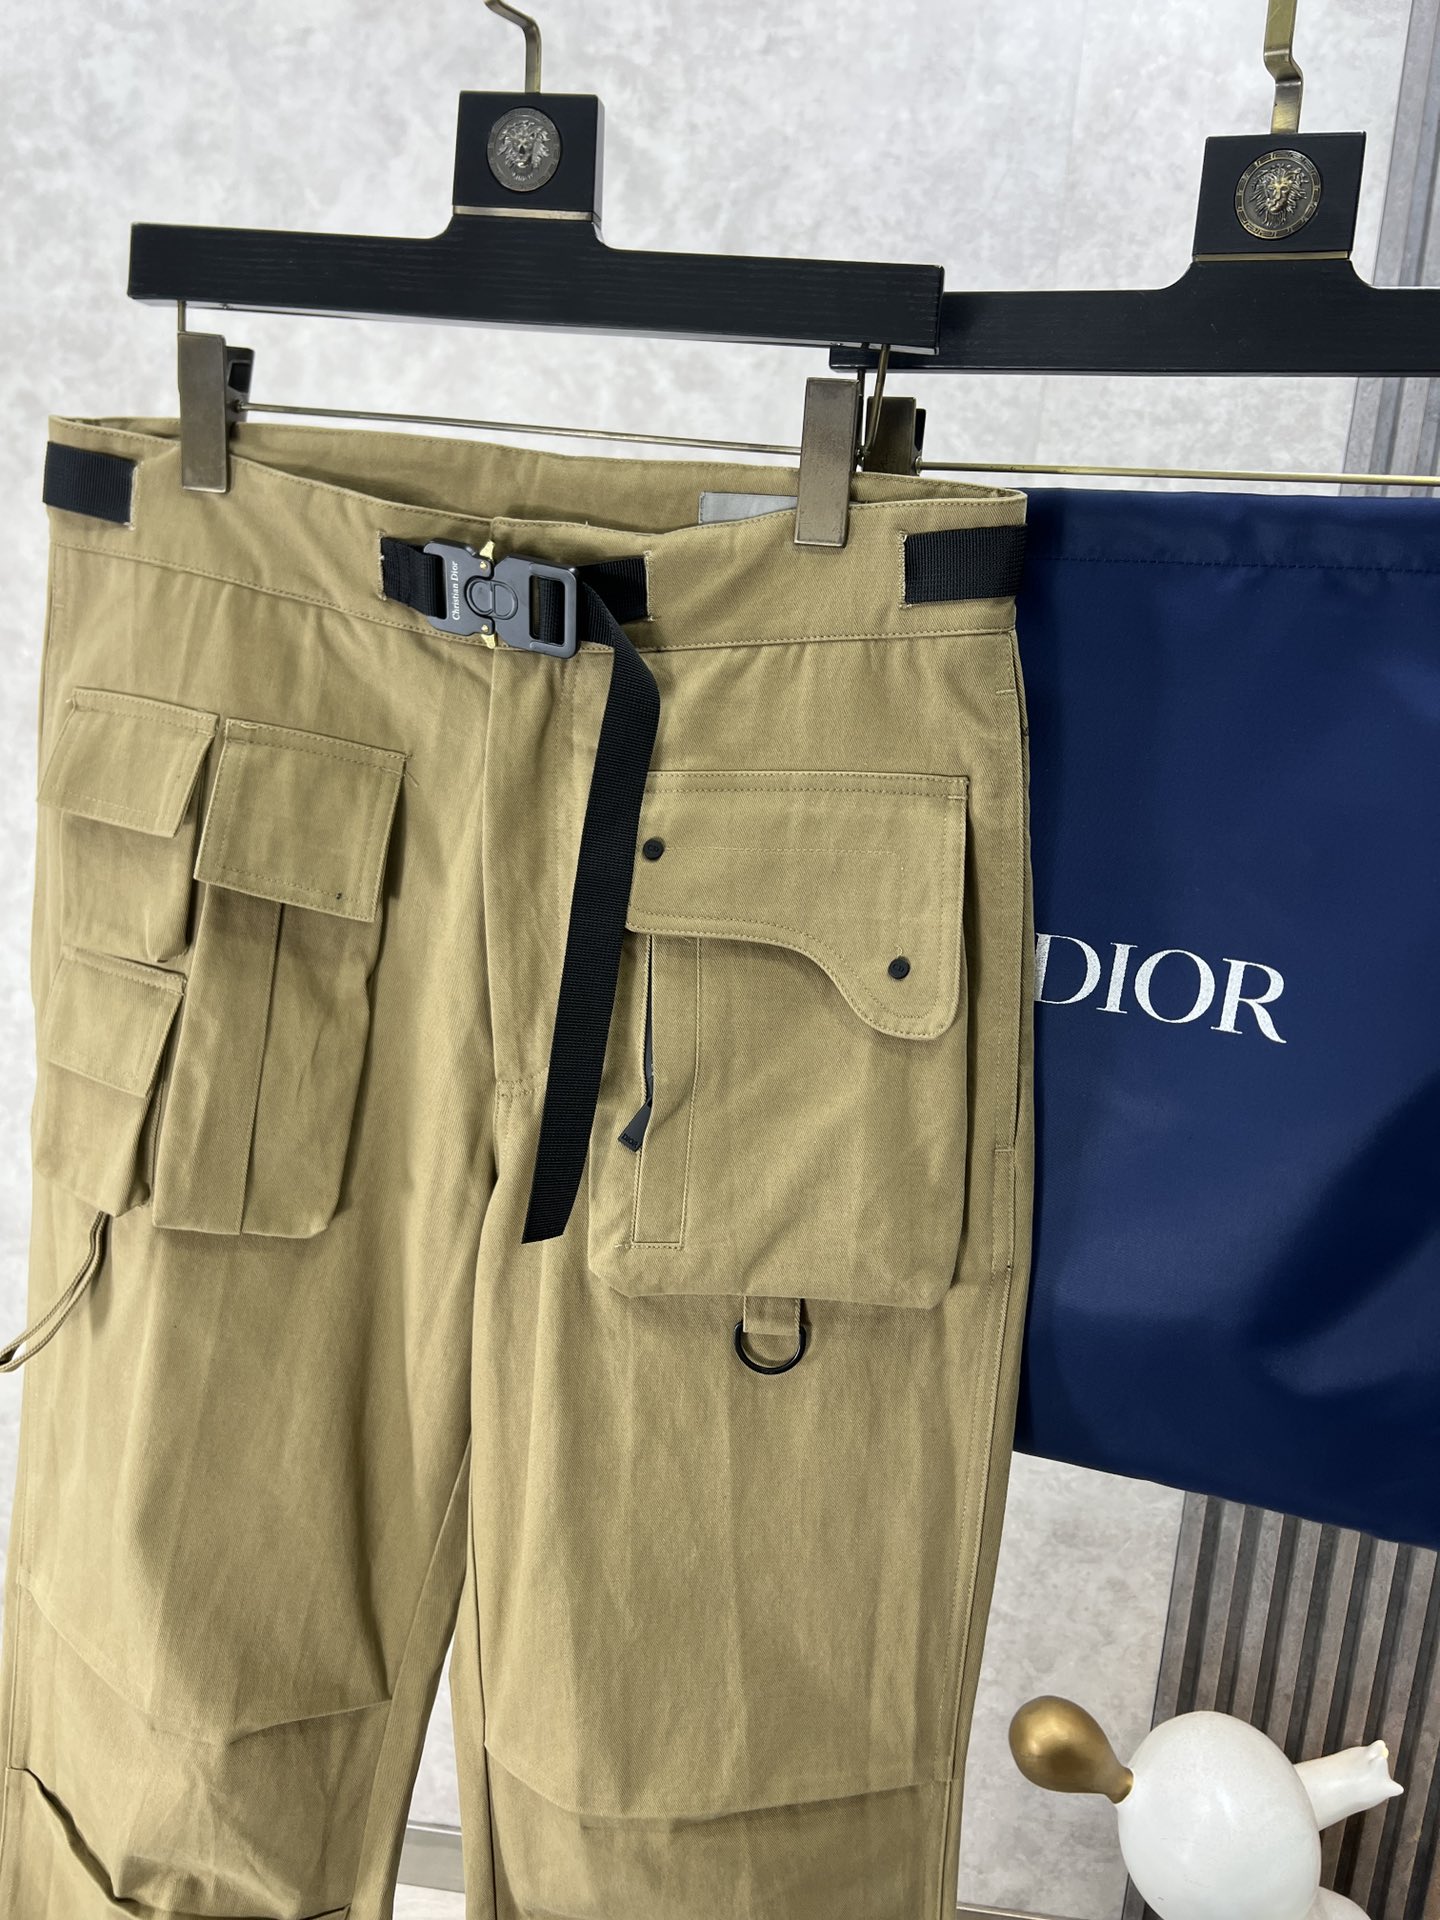 Dior迪奥新款徽标锁扣工装裤这款工装裤采用轻盈的弹力棉质华达呢精制而成采用中腰设计多口袋工装口袋饰有“